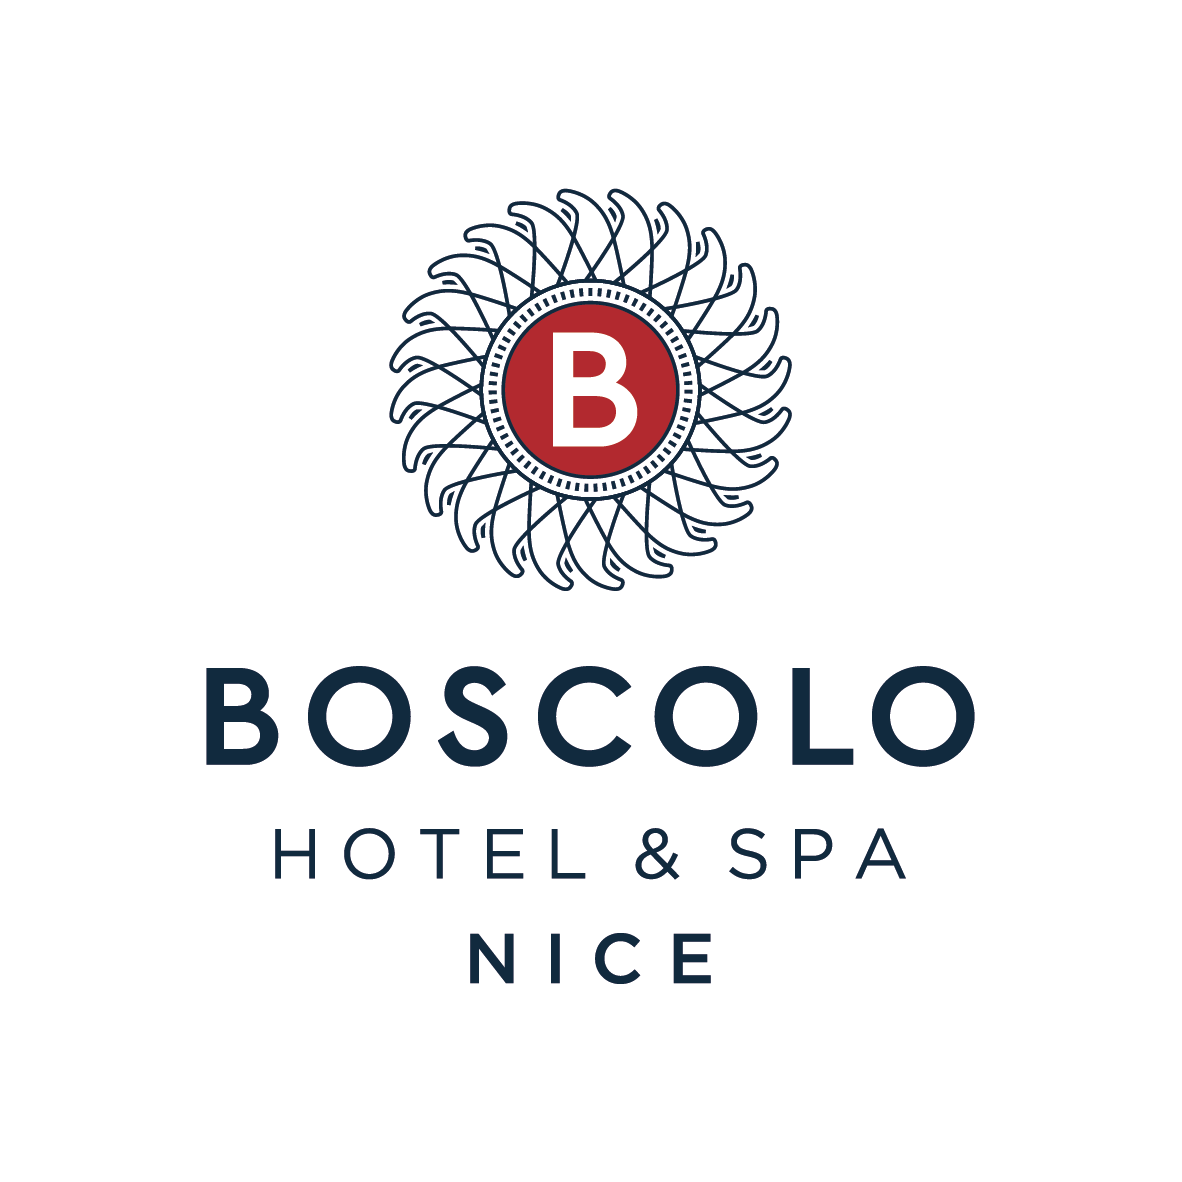 Boscolo Hotel & Spa Nice